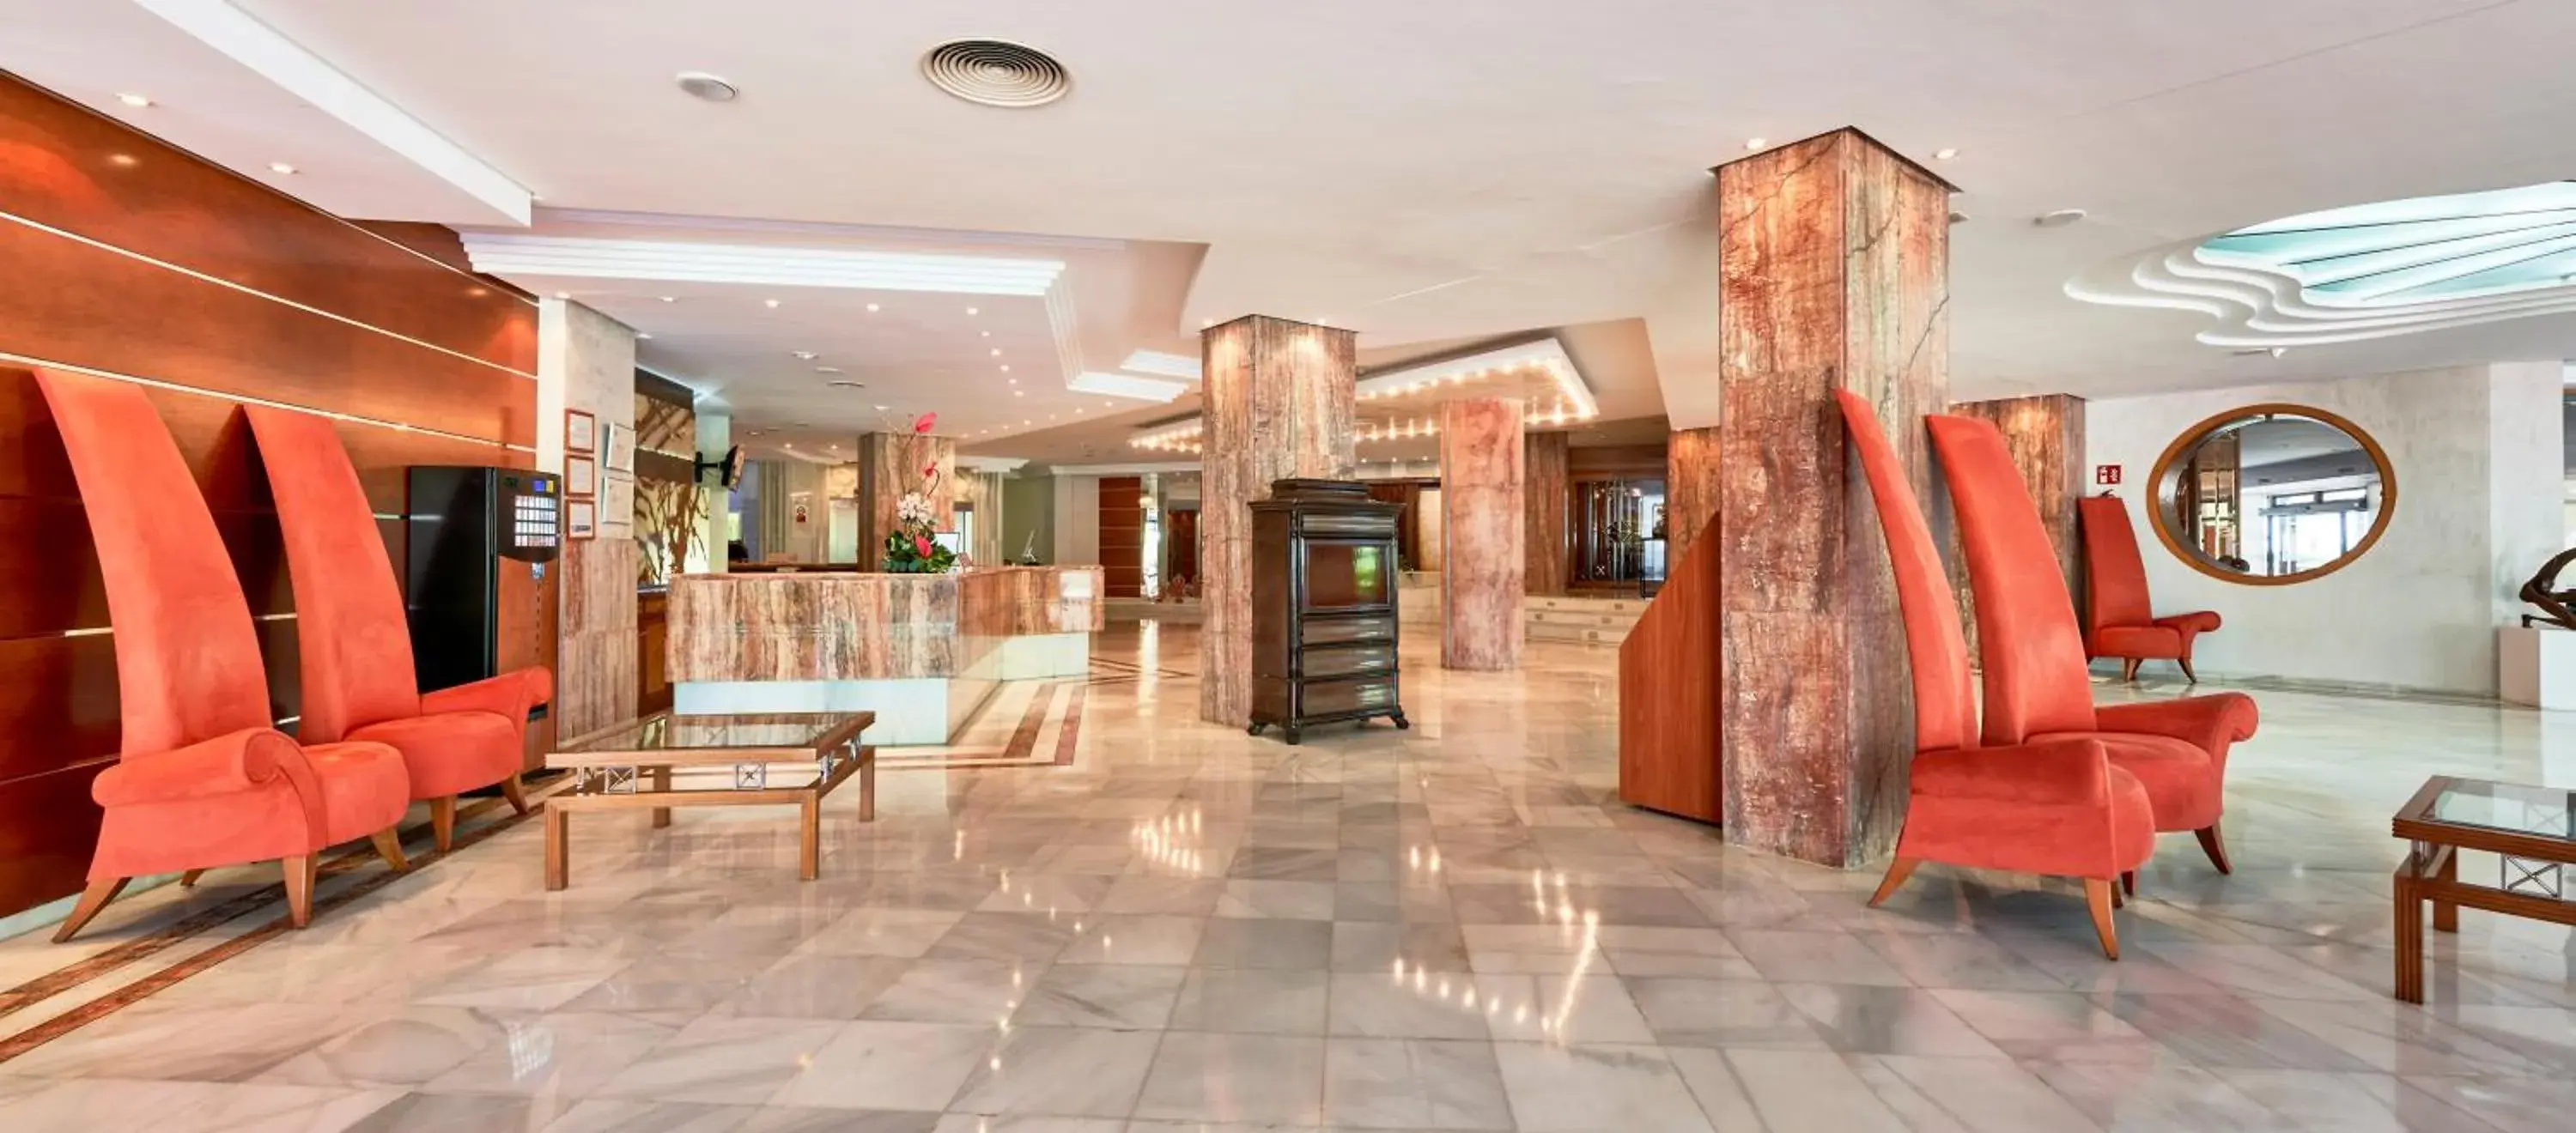 Lobby or reception, Lobby/Reception in Serrano Palace